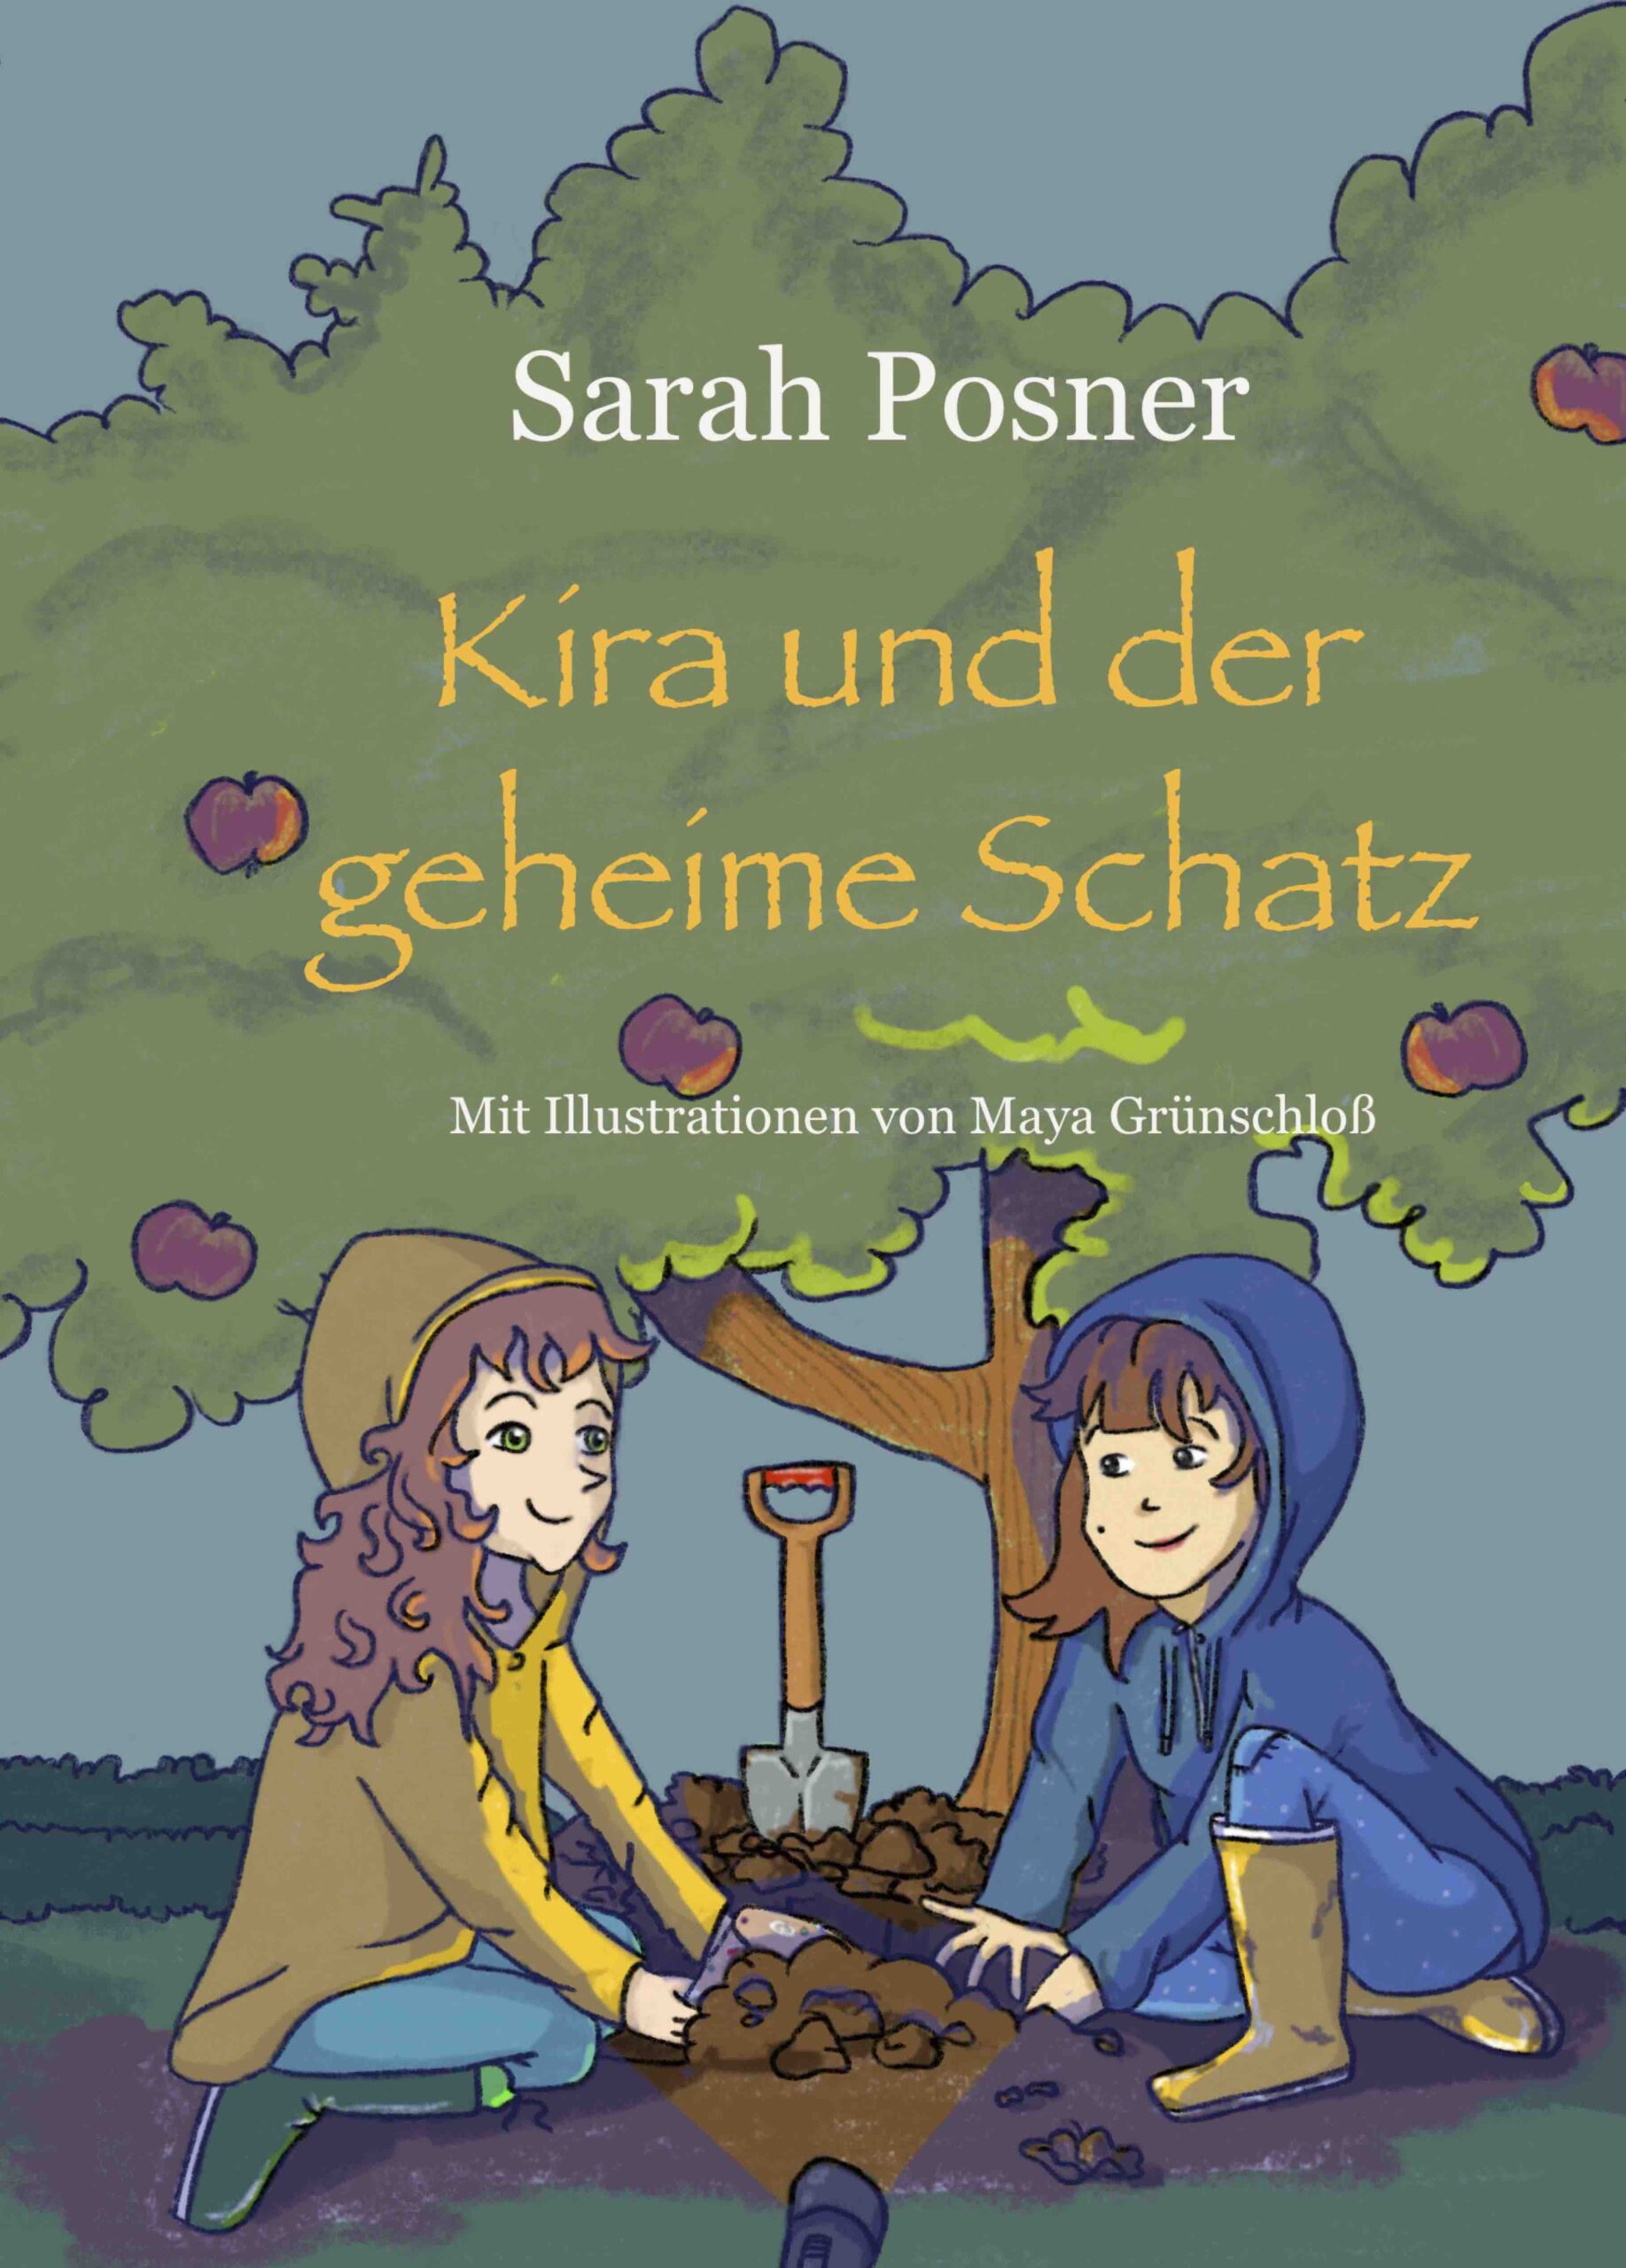 Kira und der geheime Schatz von Sarah Posner ist eine Abenteuergeschichte über Freundschaft, Angst und Mut.